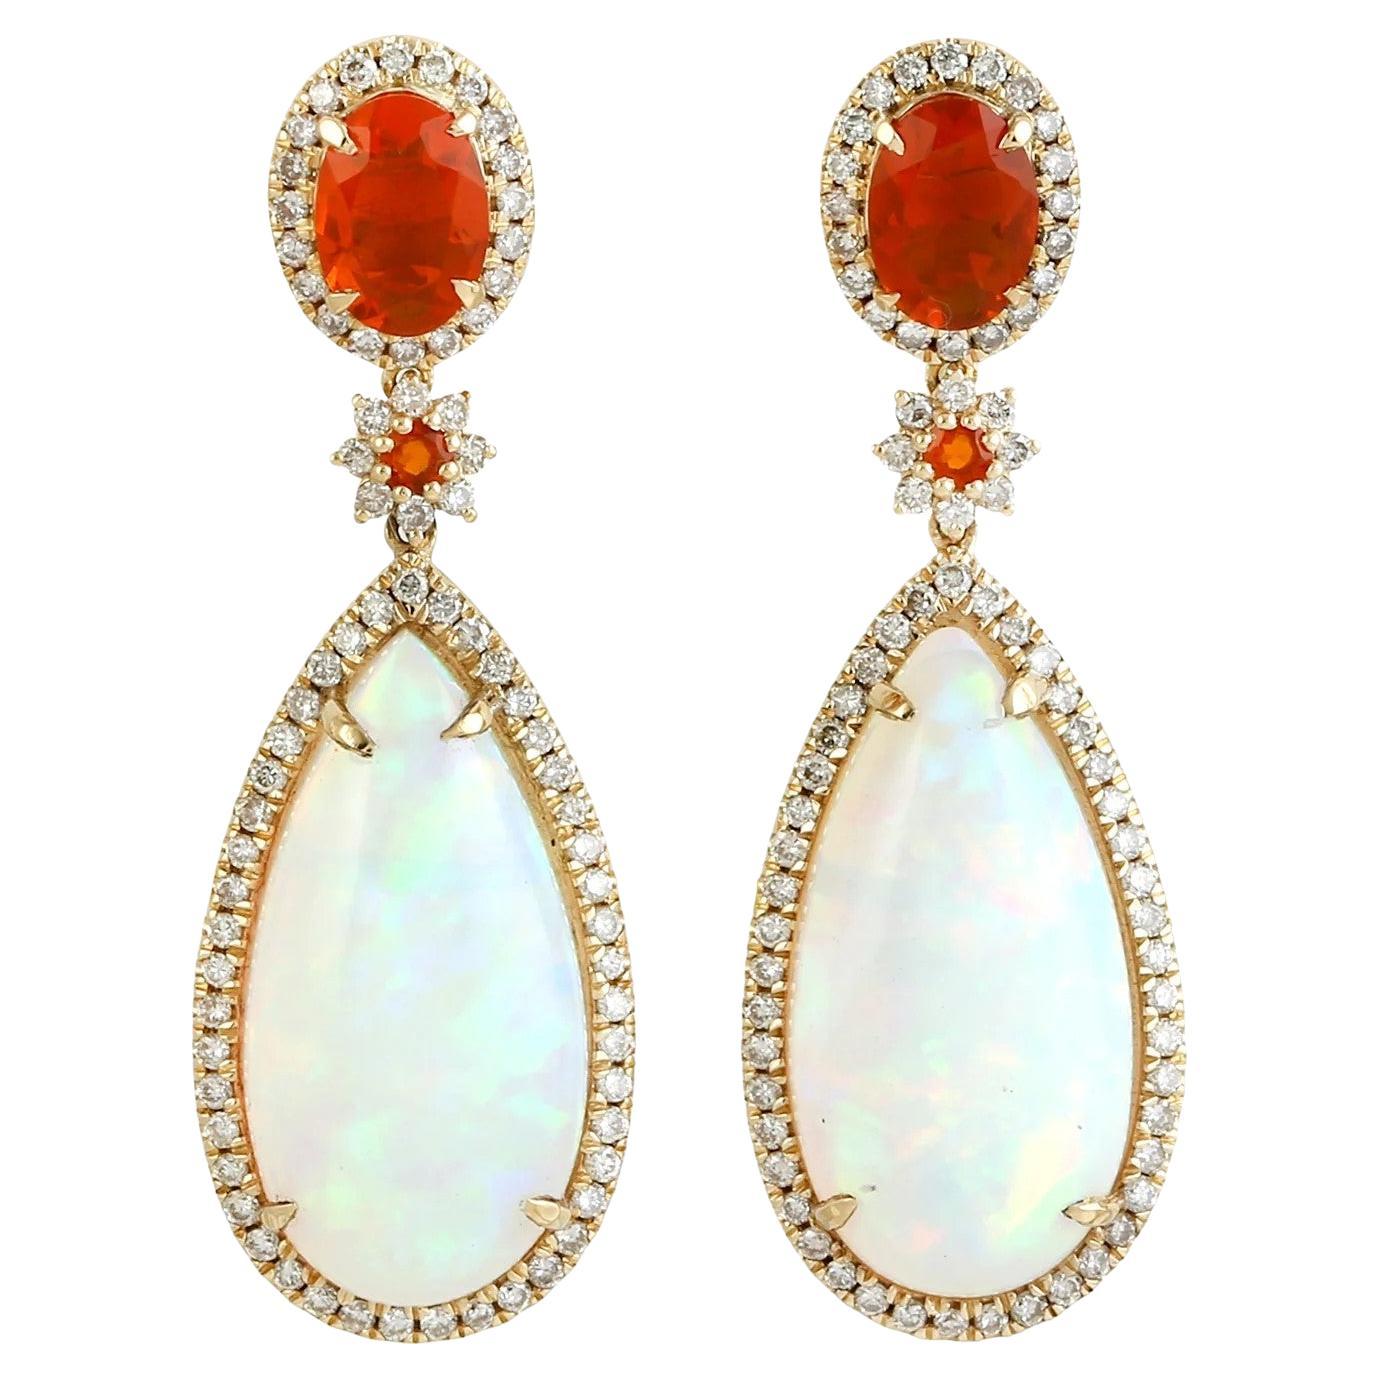 11.76 carat Ethiopian Opal Fire Opal Diamond 18 Karat Gold Earrings For Sale